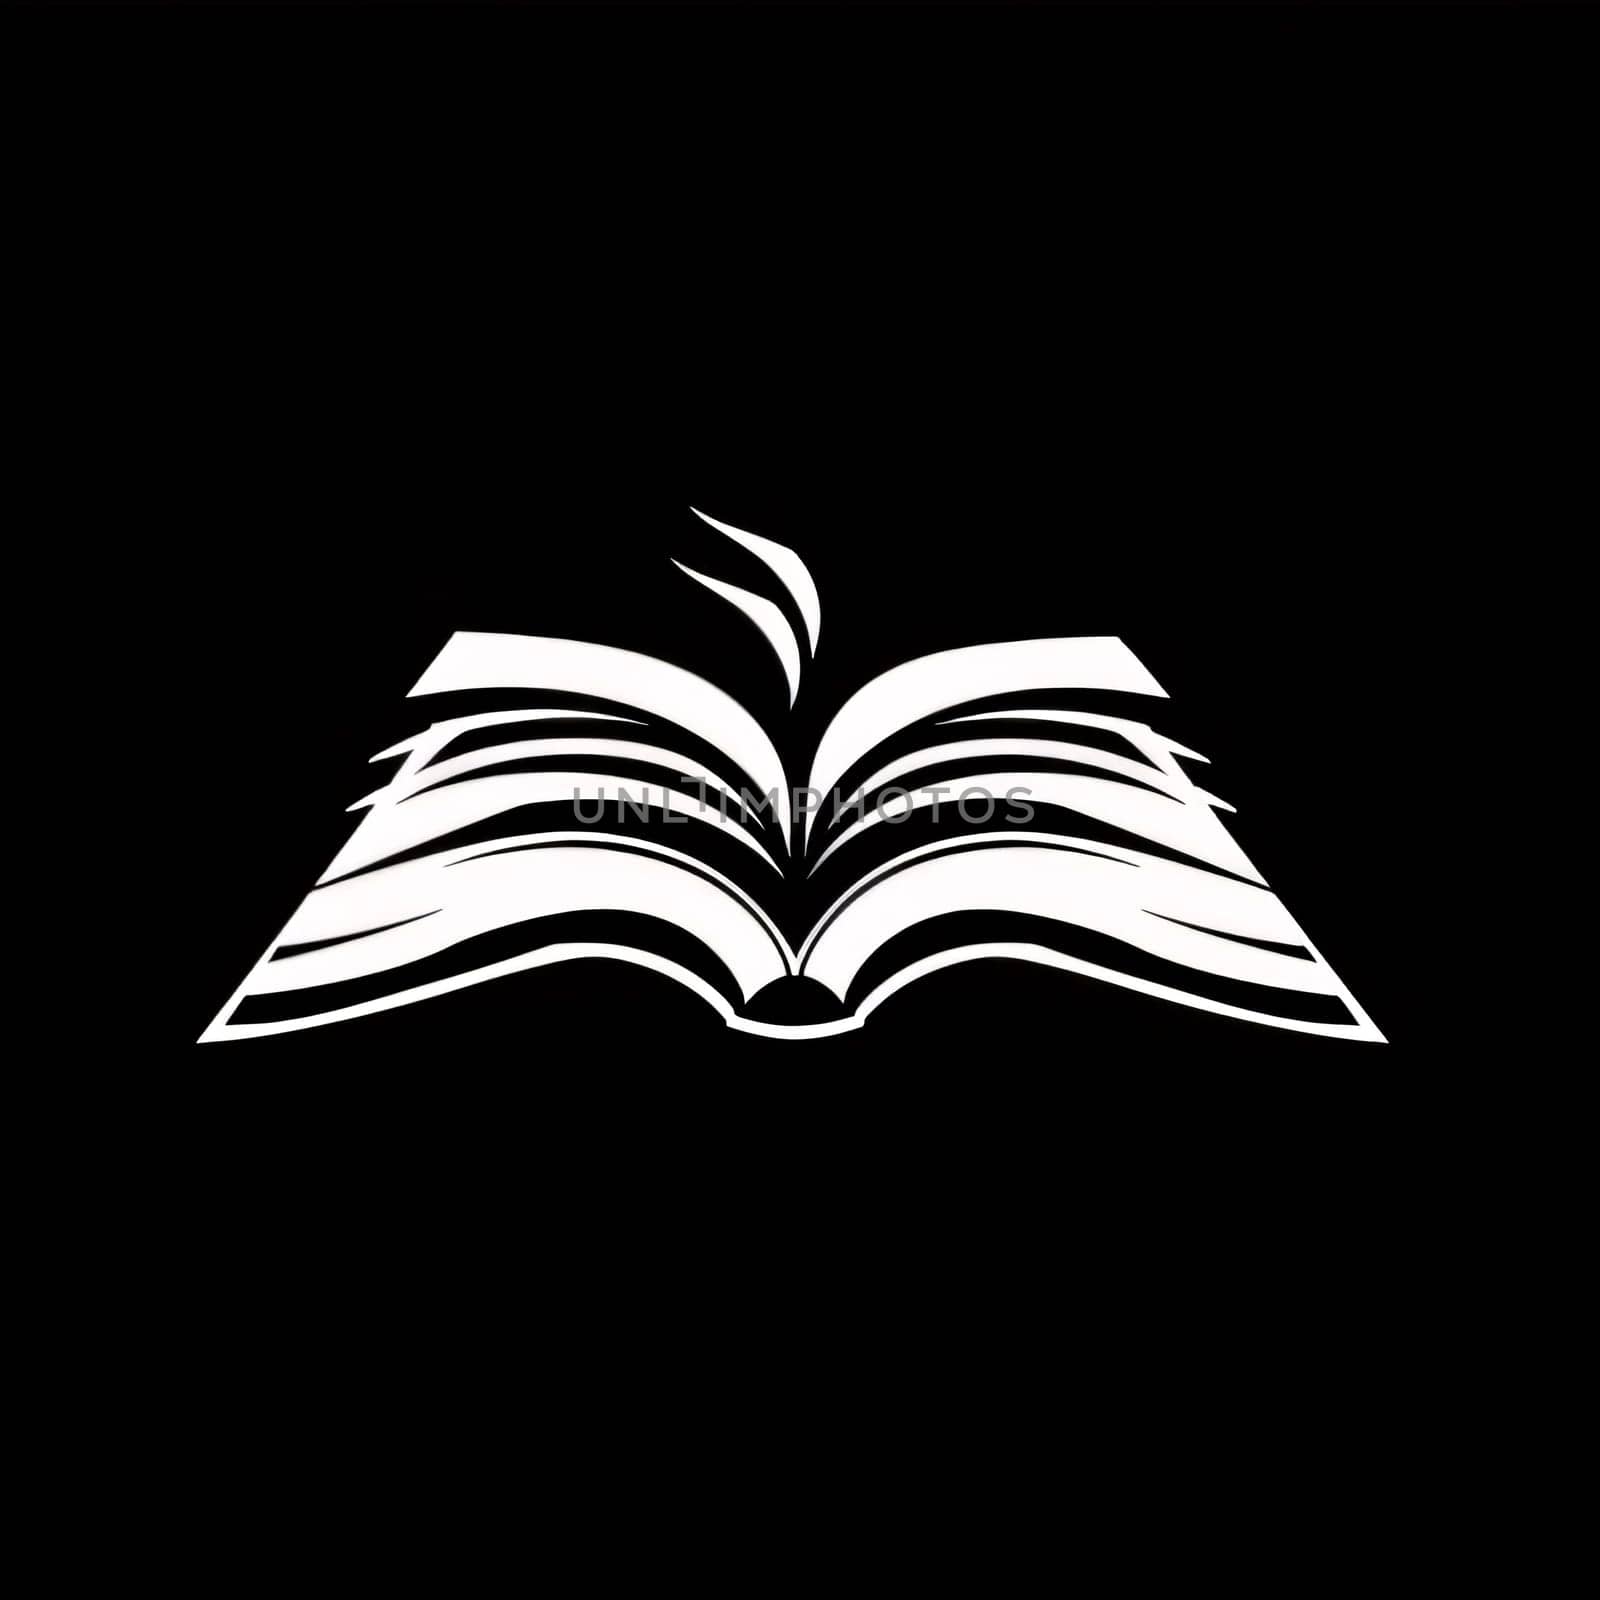 World Book Day: Book logo design vector template. Open book icon. Vector illustration.